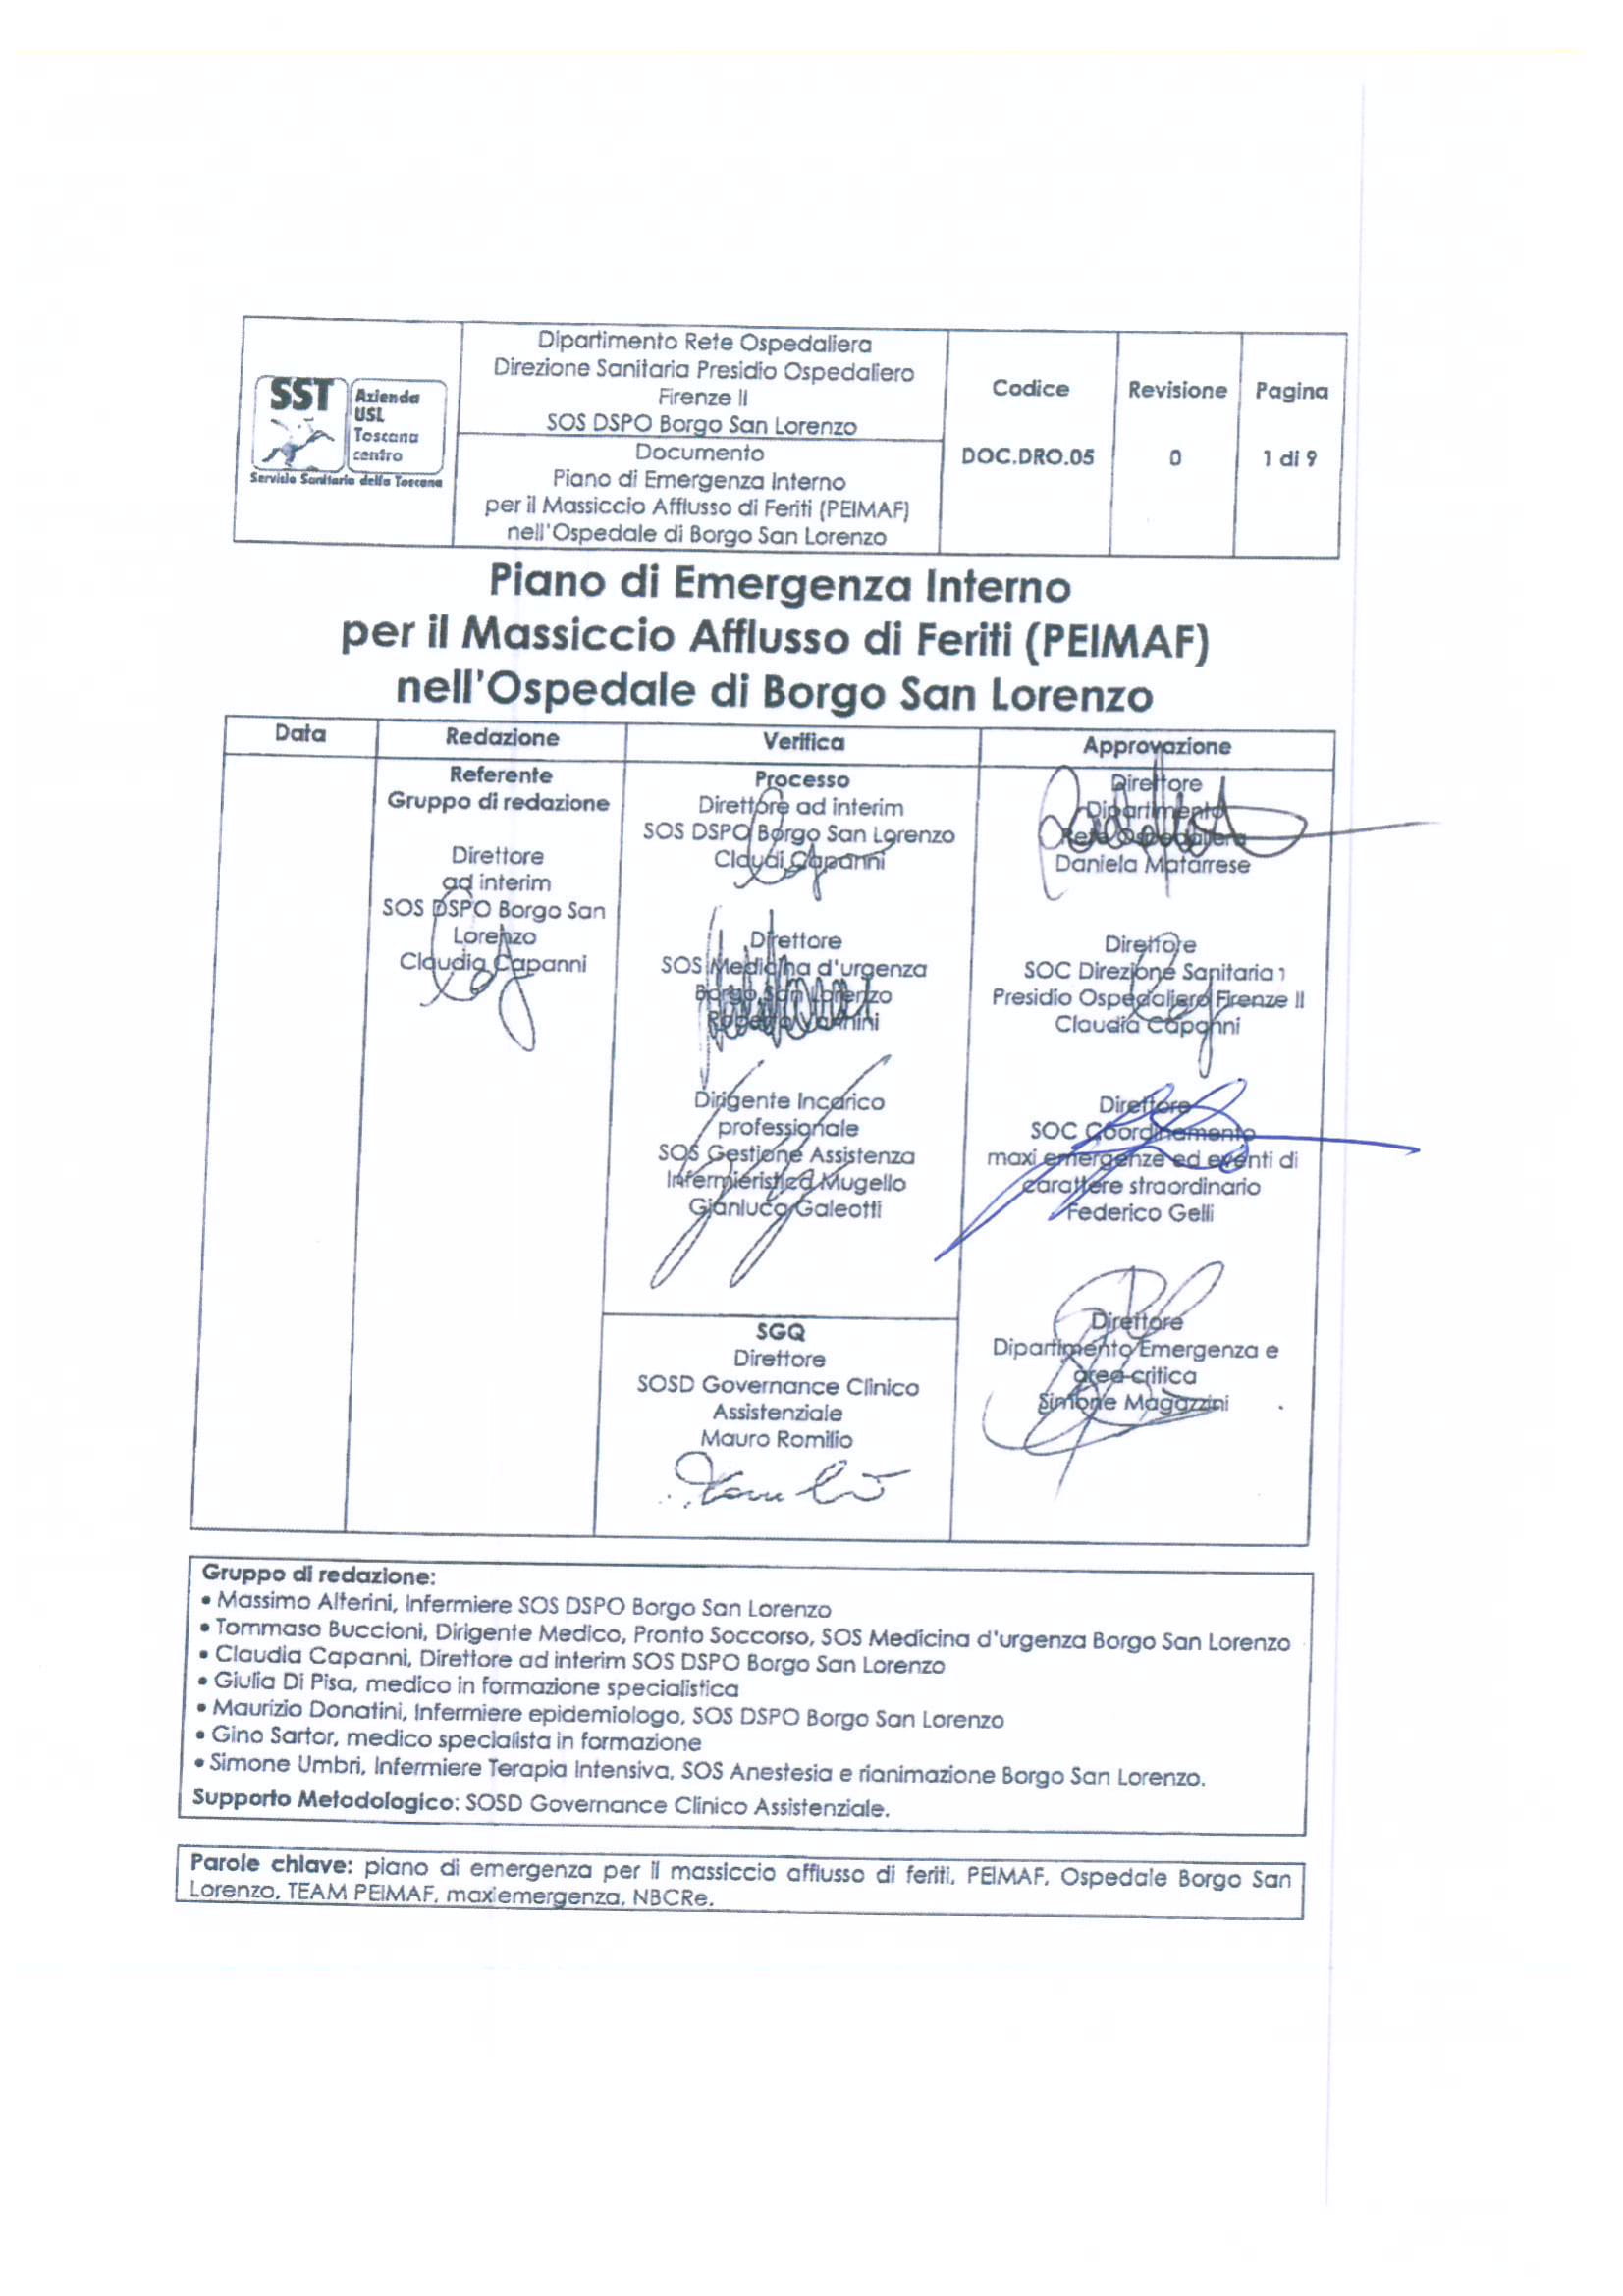 DOC.DRO.05 Piano di Emergenza Interno per il Massiccio Afflusso di Feriti (PEIMAF) nell’Ospedale di Borgo San Lorenzo